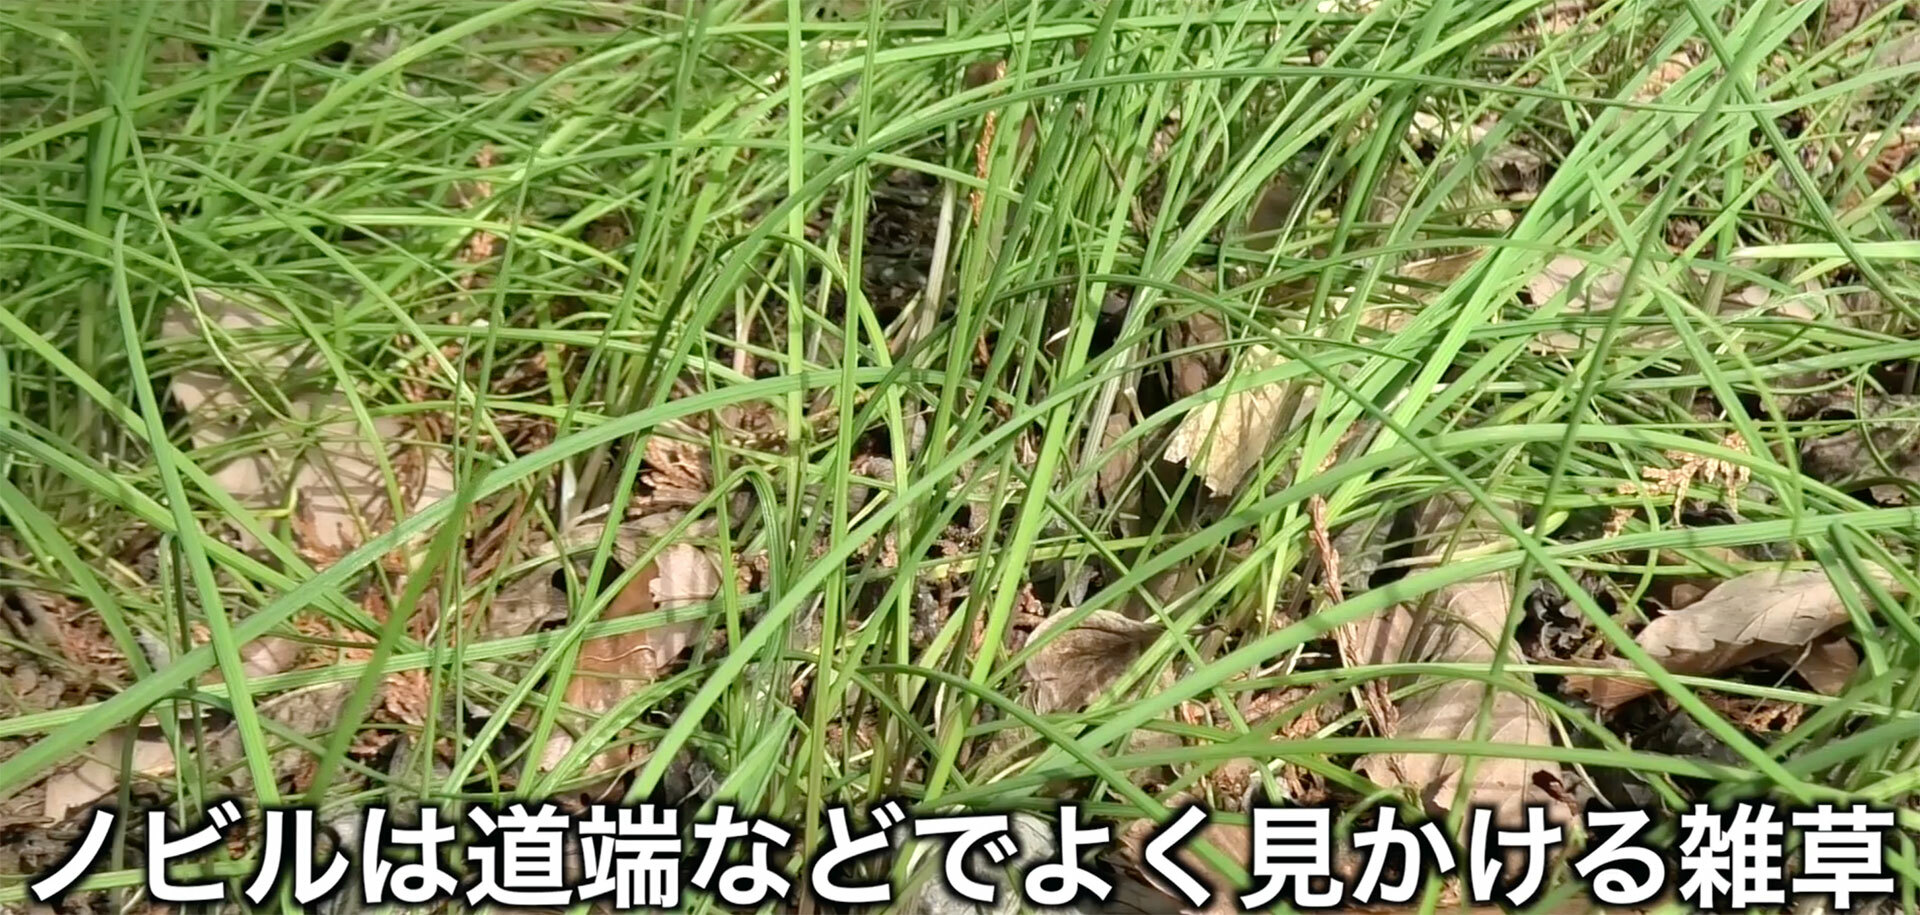 ノビルは春に地面から緑色の細い紐のような葉を多数伸ばすネギの仲間